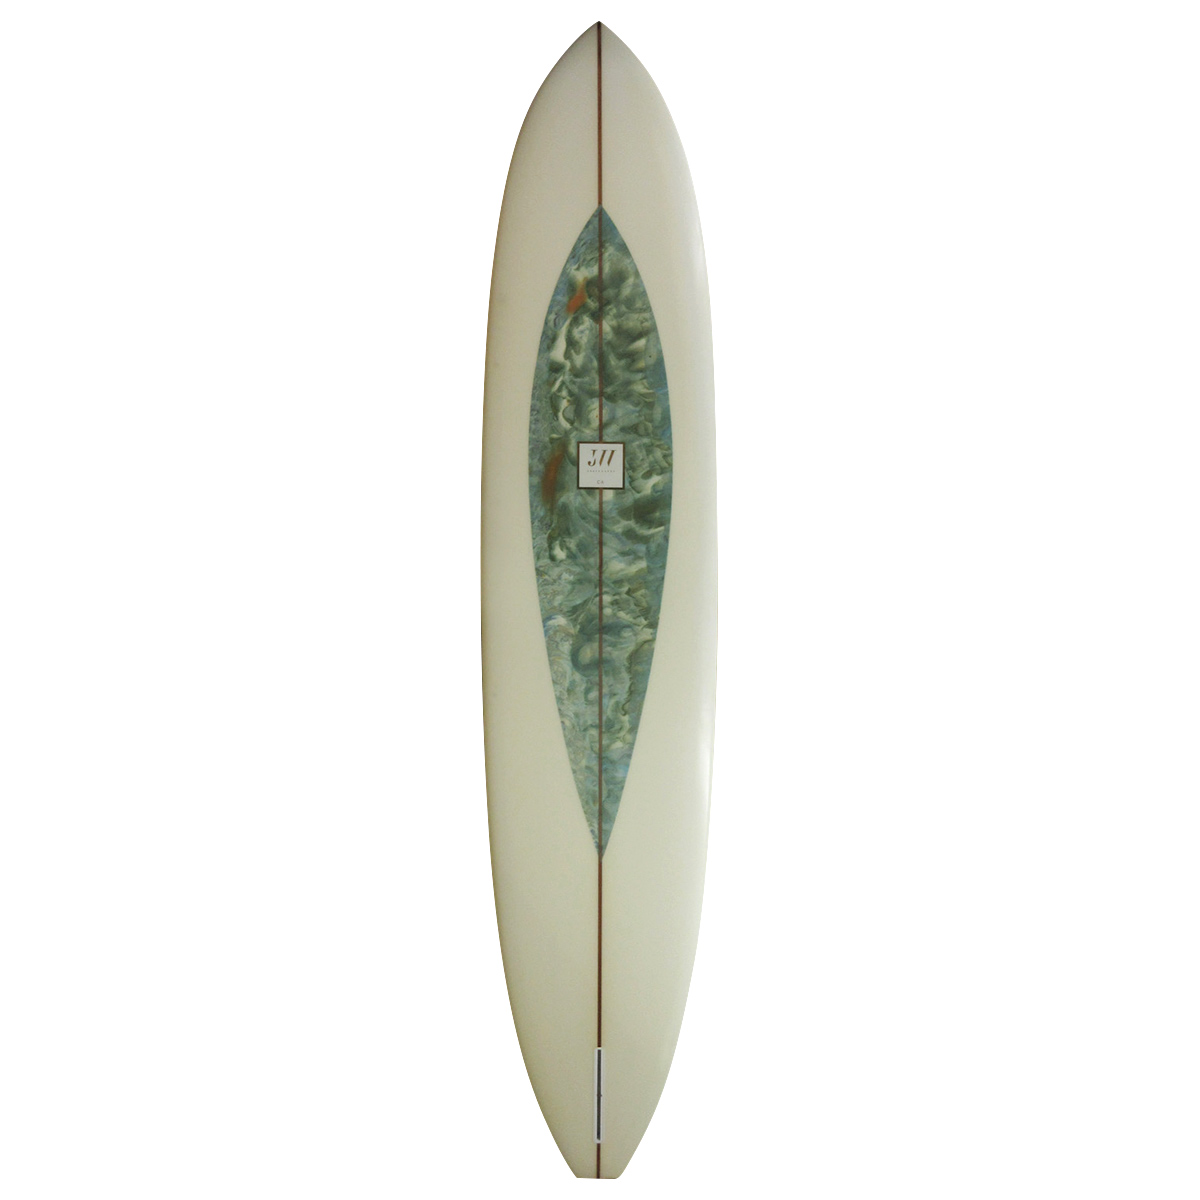 JOHN WESLEY SURFBOARDS / GLIDER 9`8